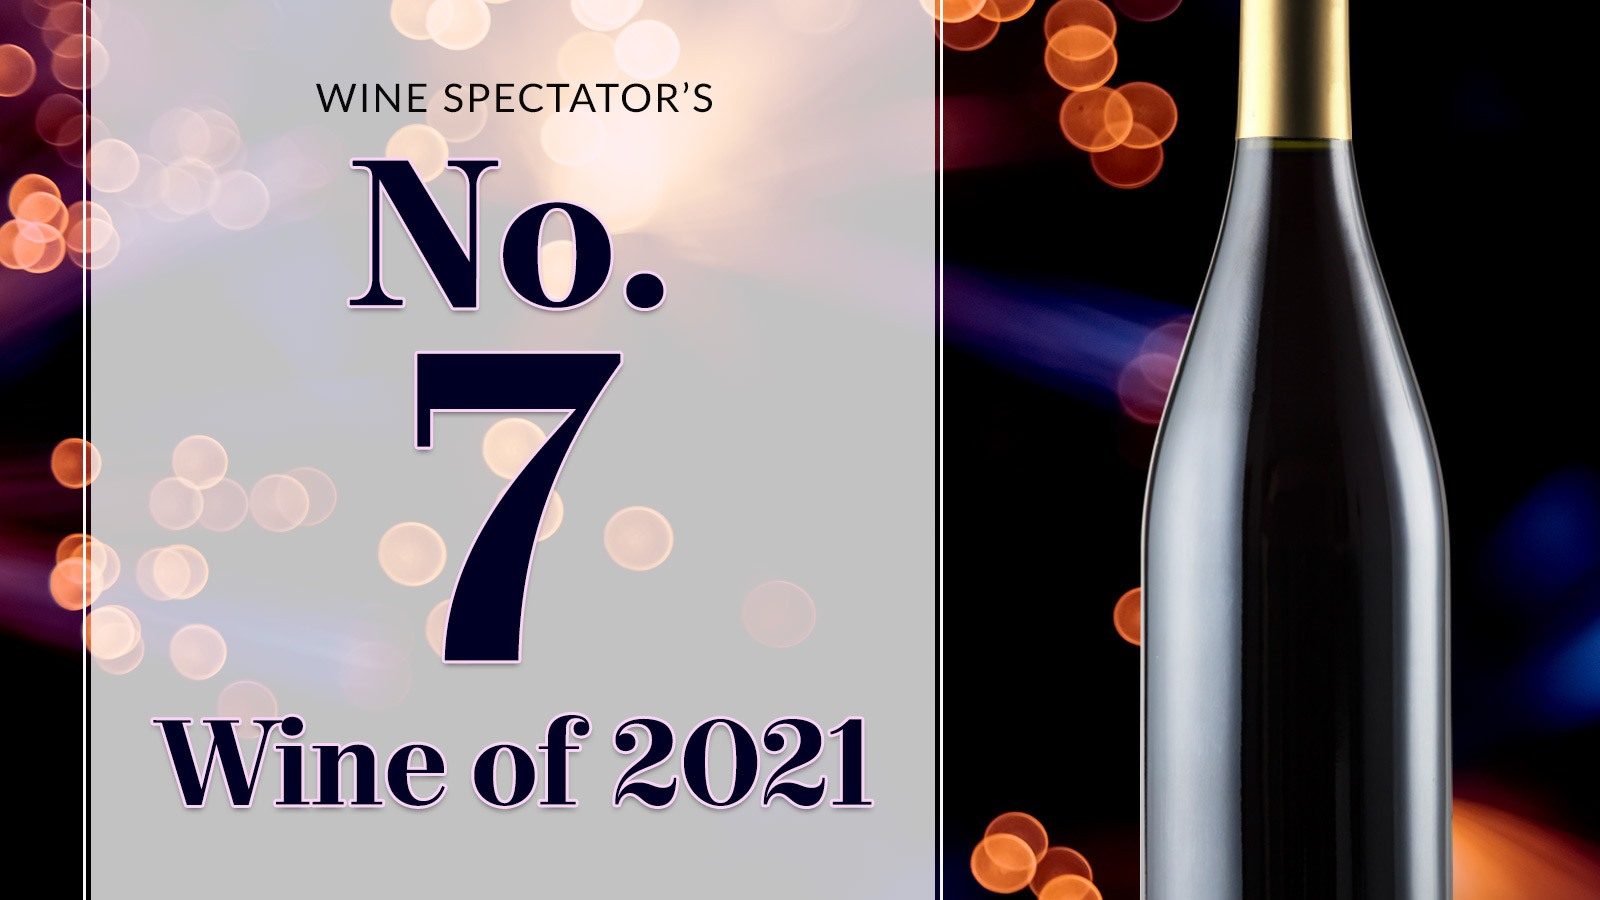 Léoville Poyferré 2018, 7ème meilleur vin du monde pour le Wine Spectator - Léoville Poyferré